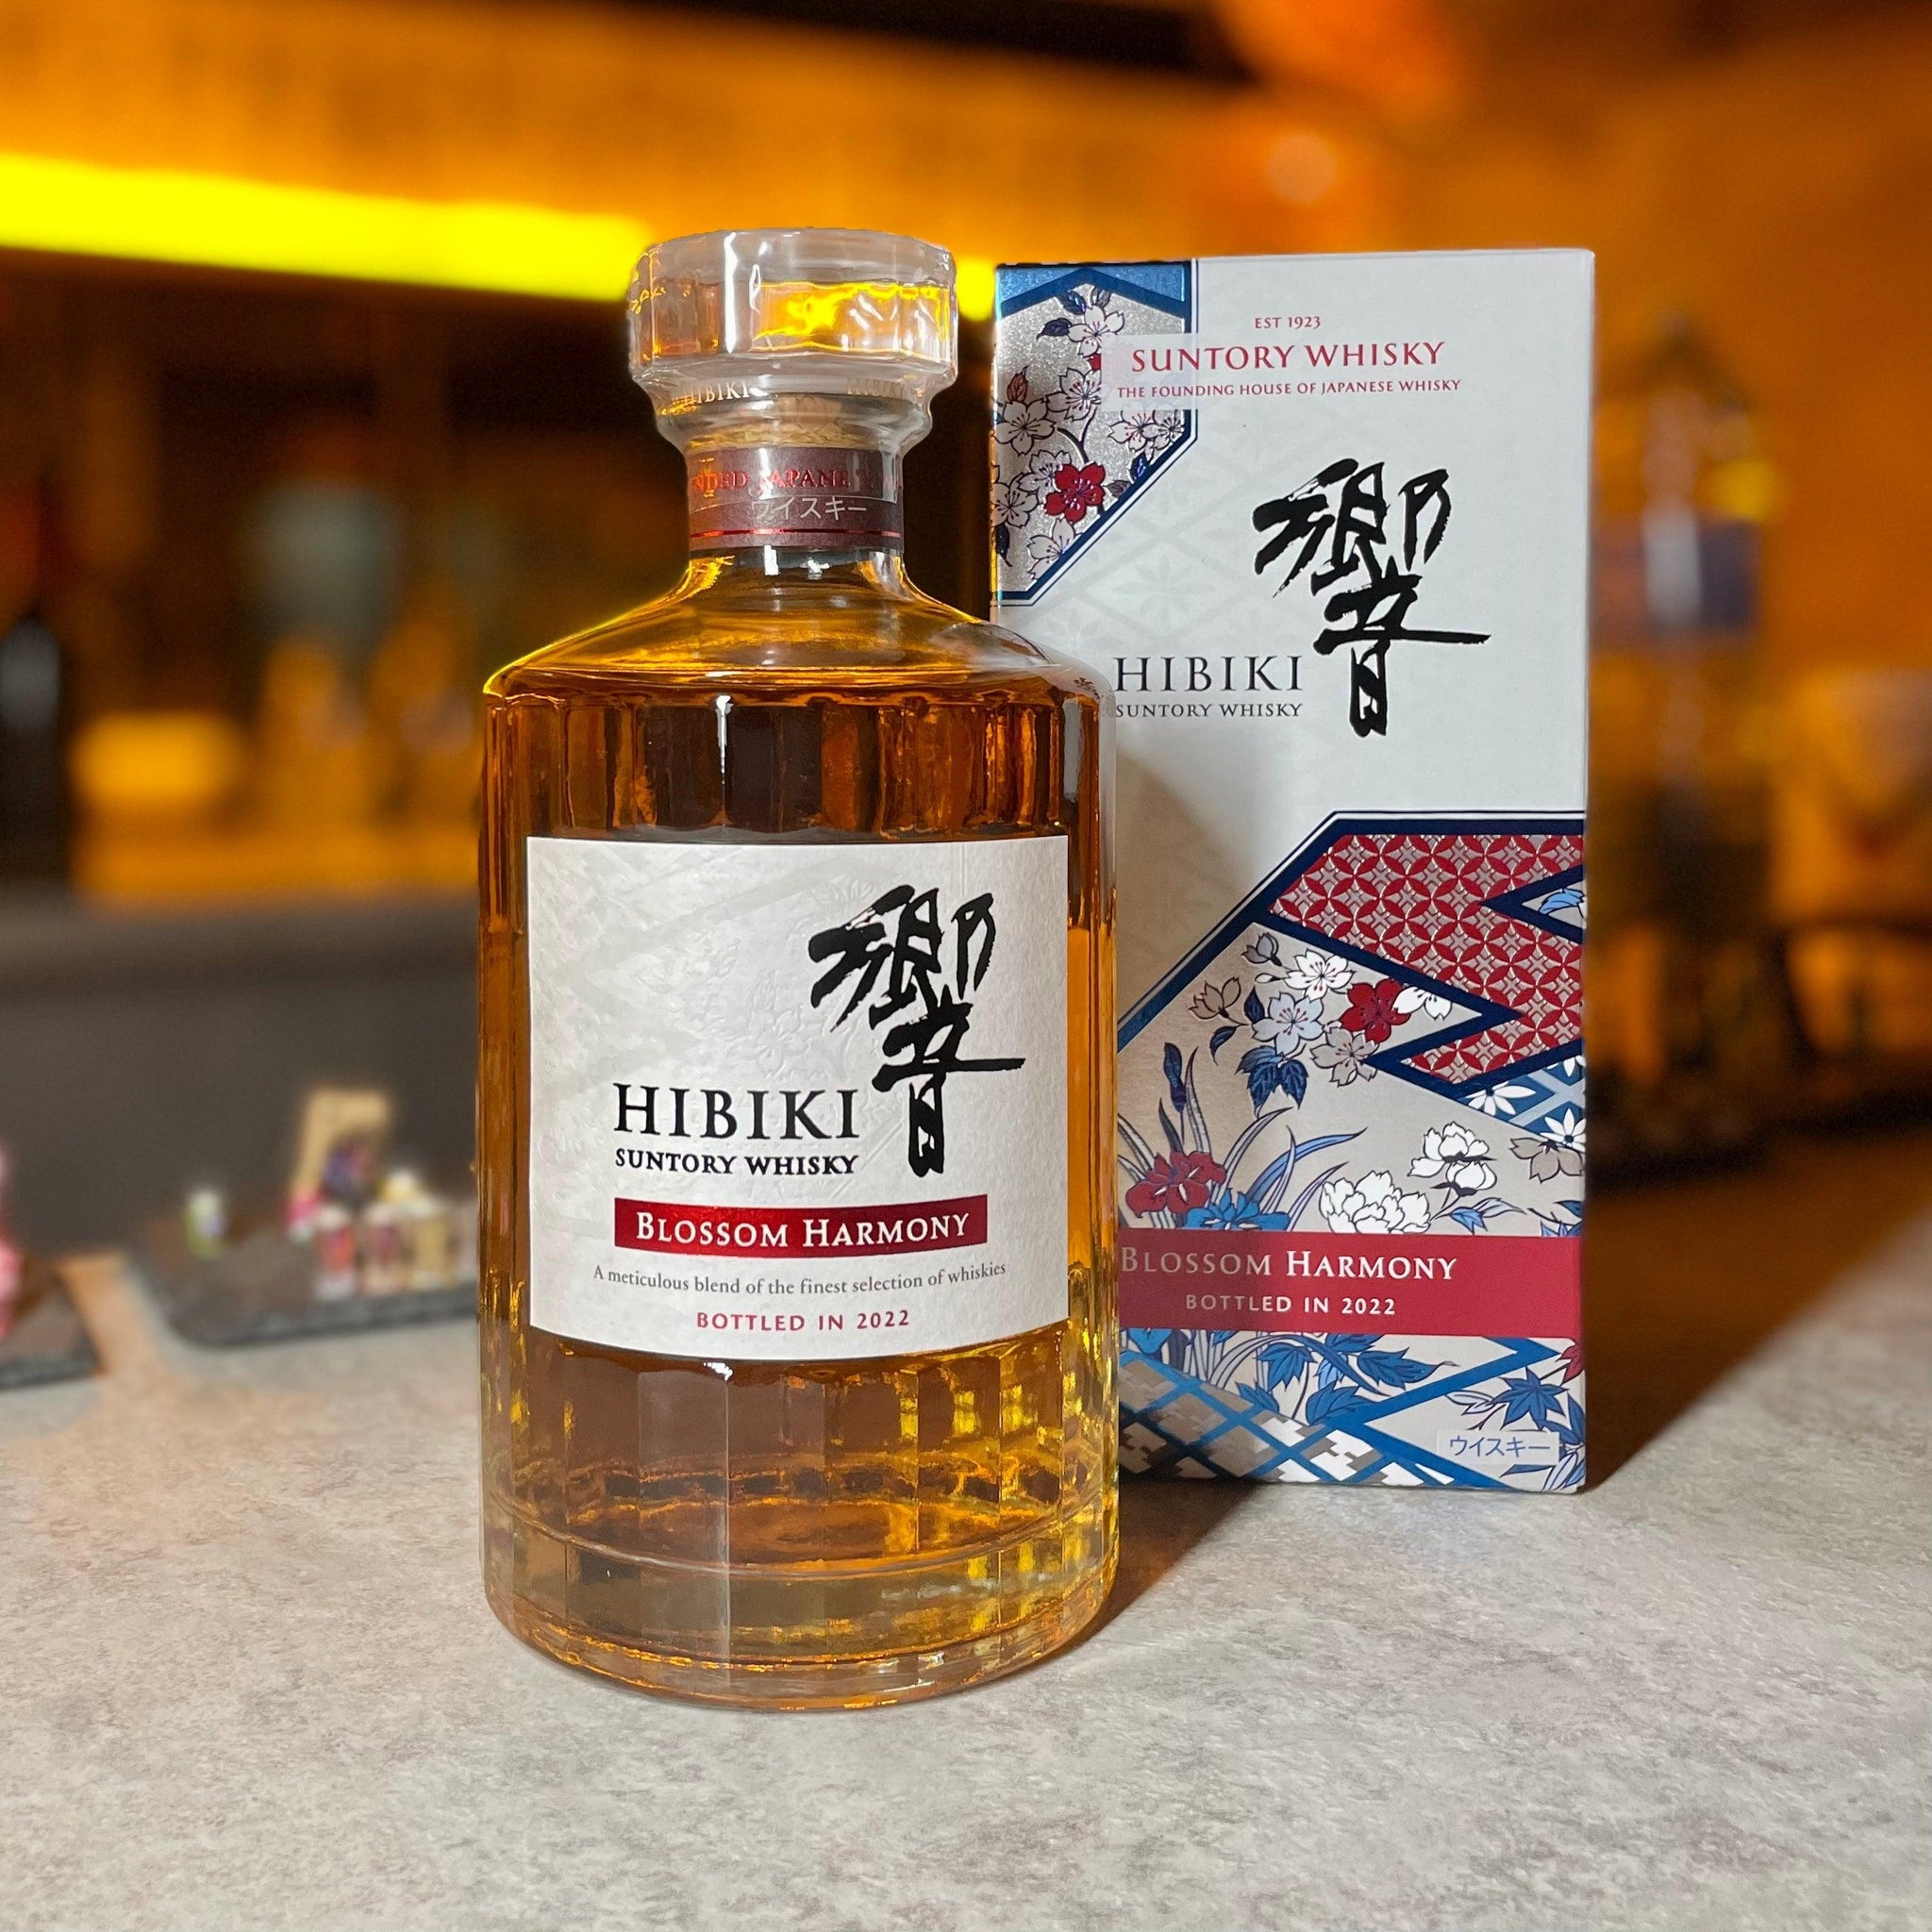 日本威士忌 - 響 Blossom Harmony 2022年限定 調和威士忌 - Chillax.hk